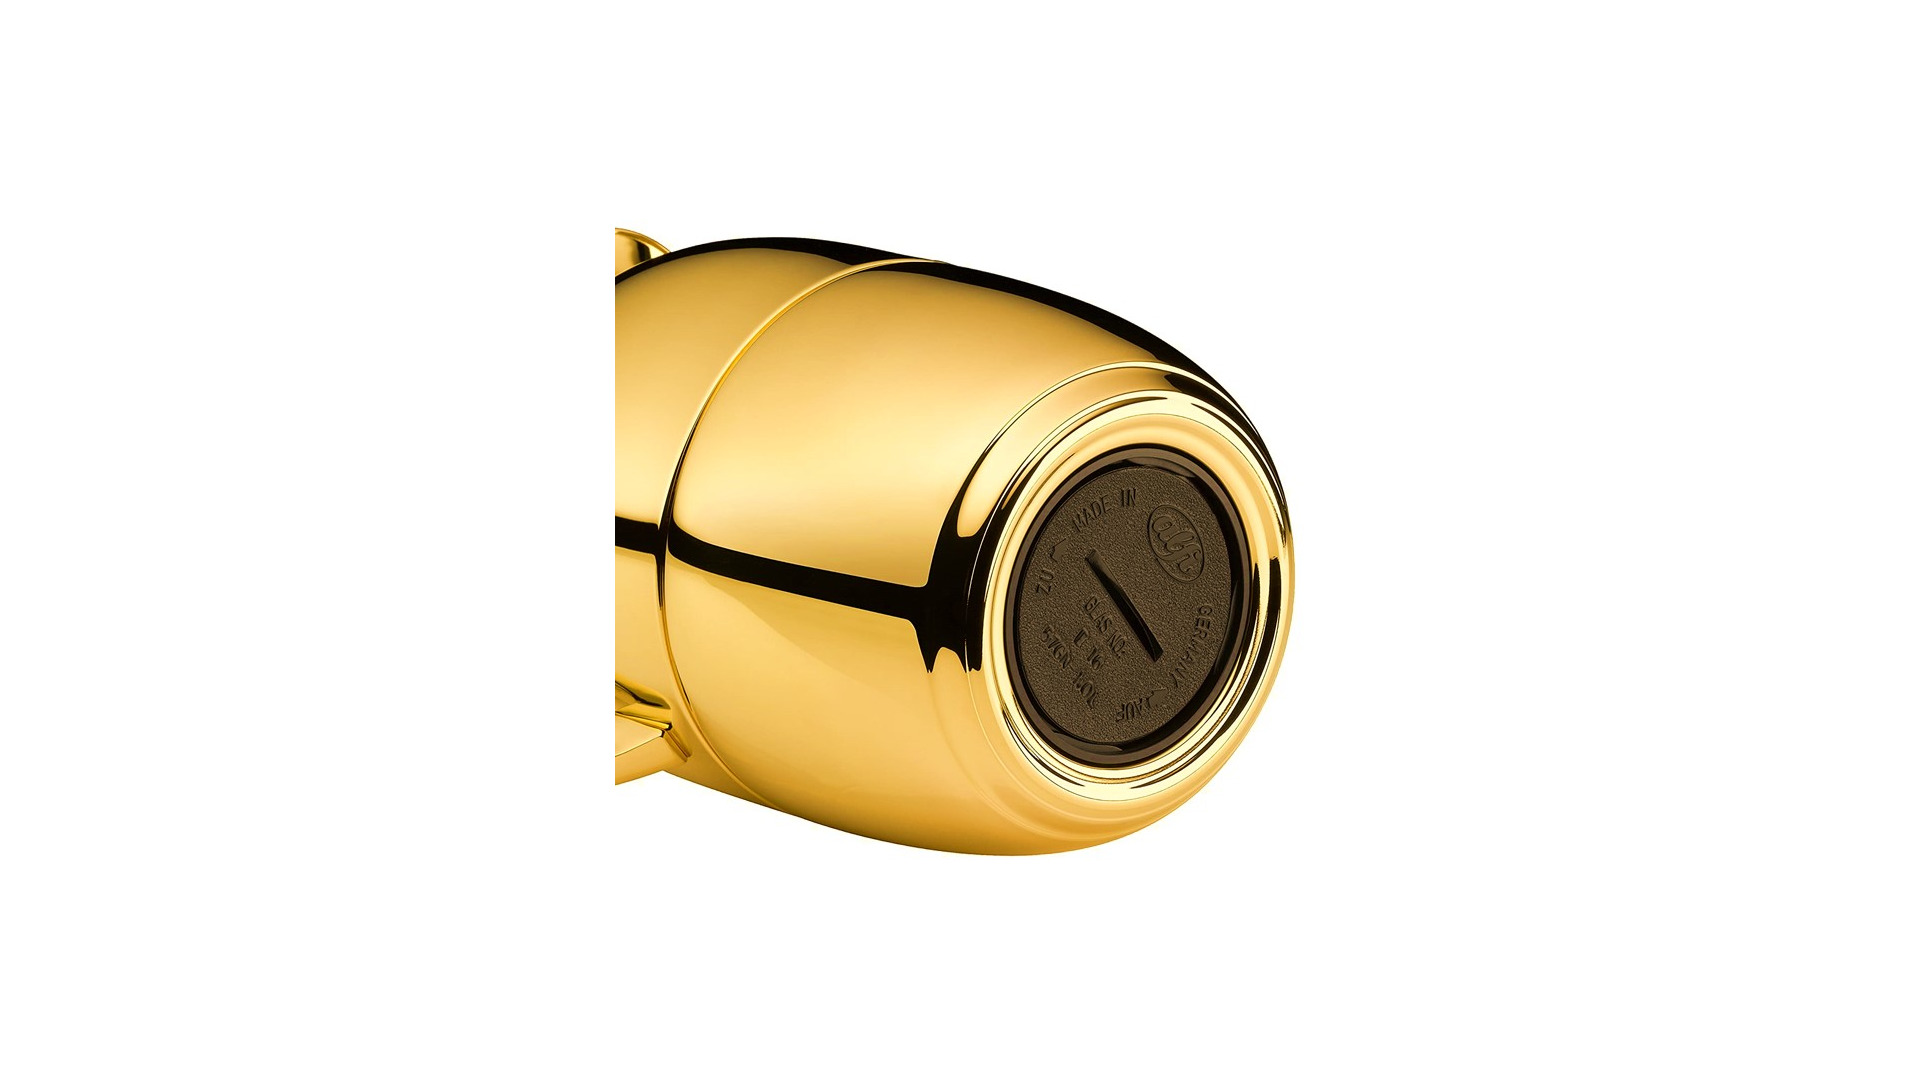 Термокувшин вакуумный со стеклянной колбой Alfi Juwel 1 л, золотой, сталь нержавеющая